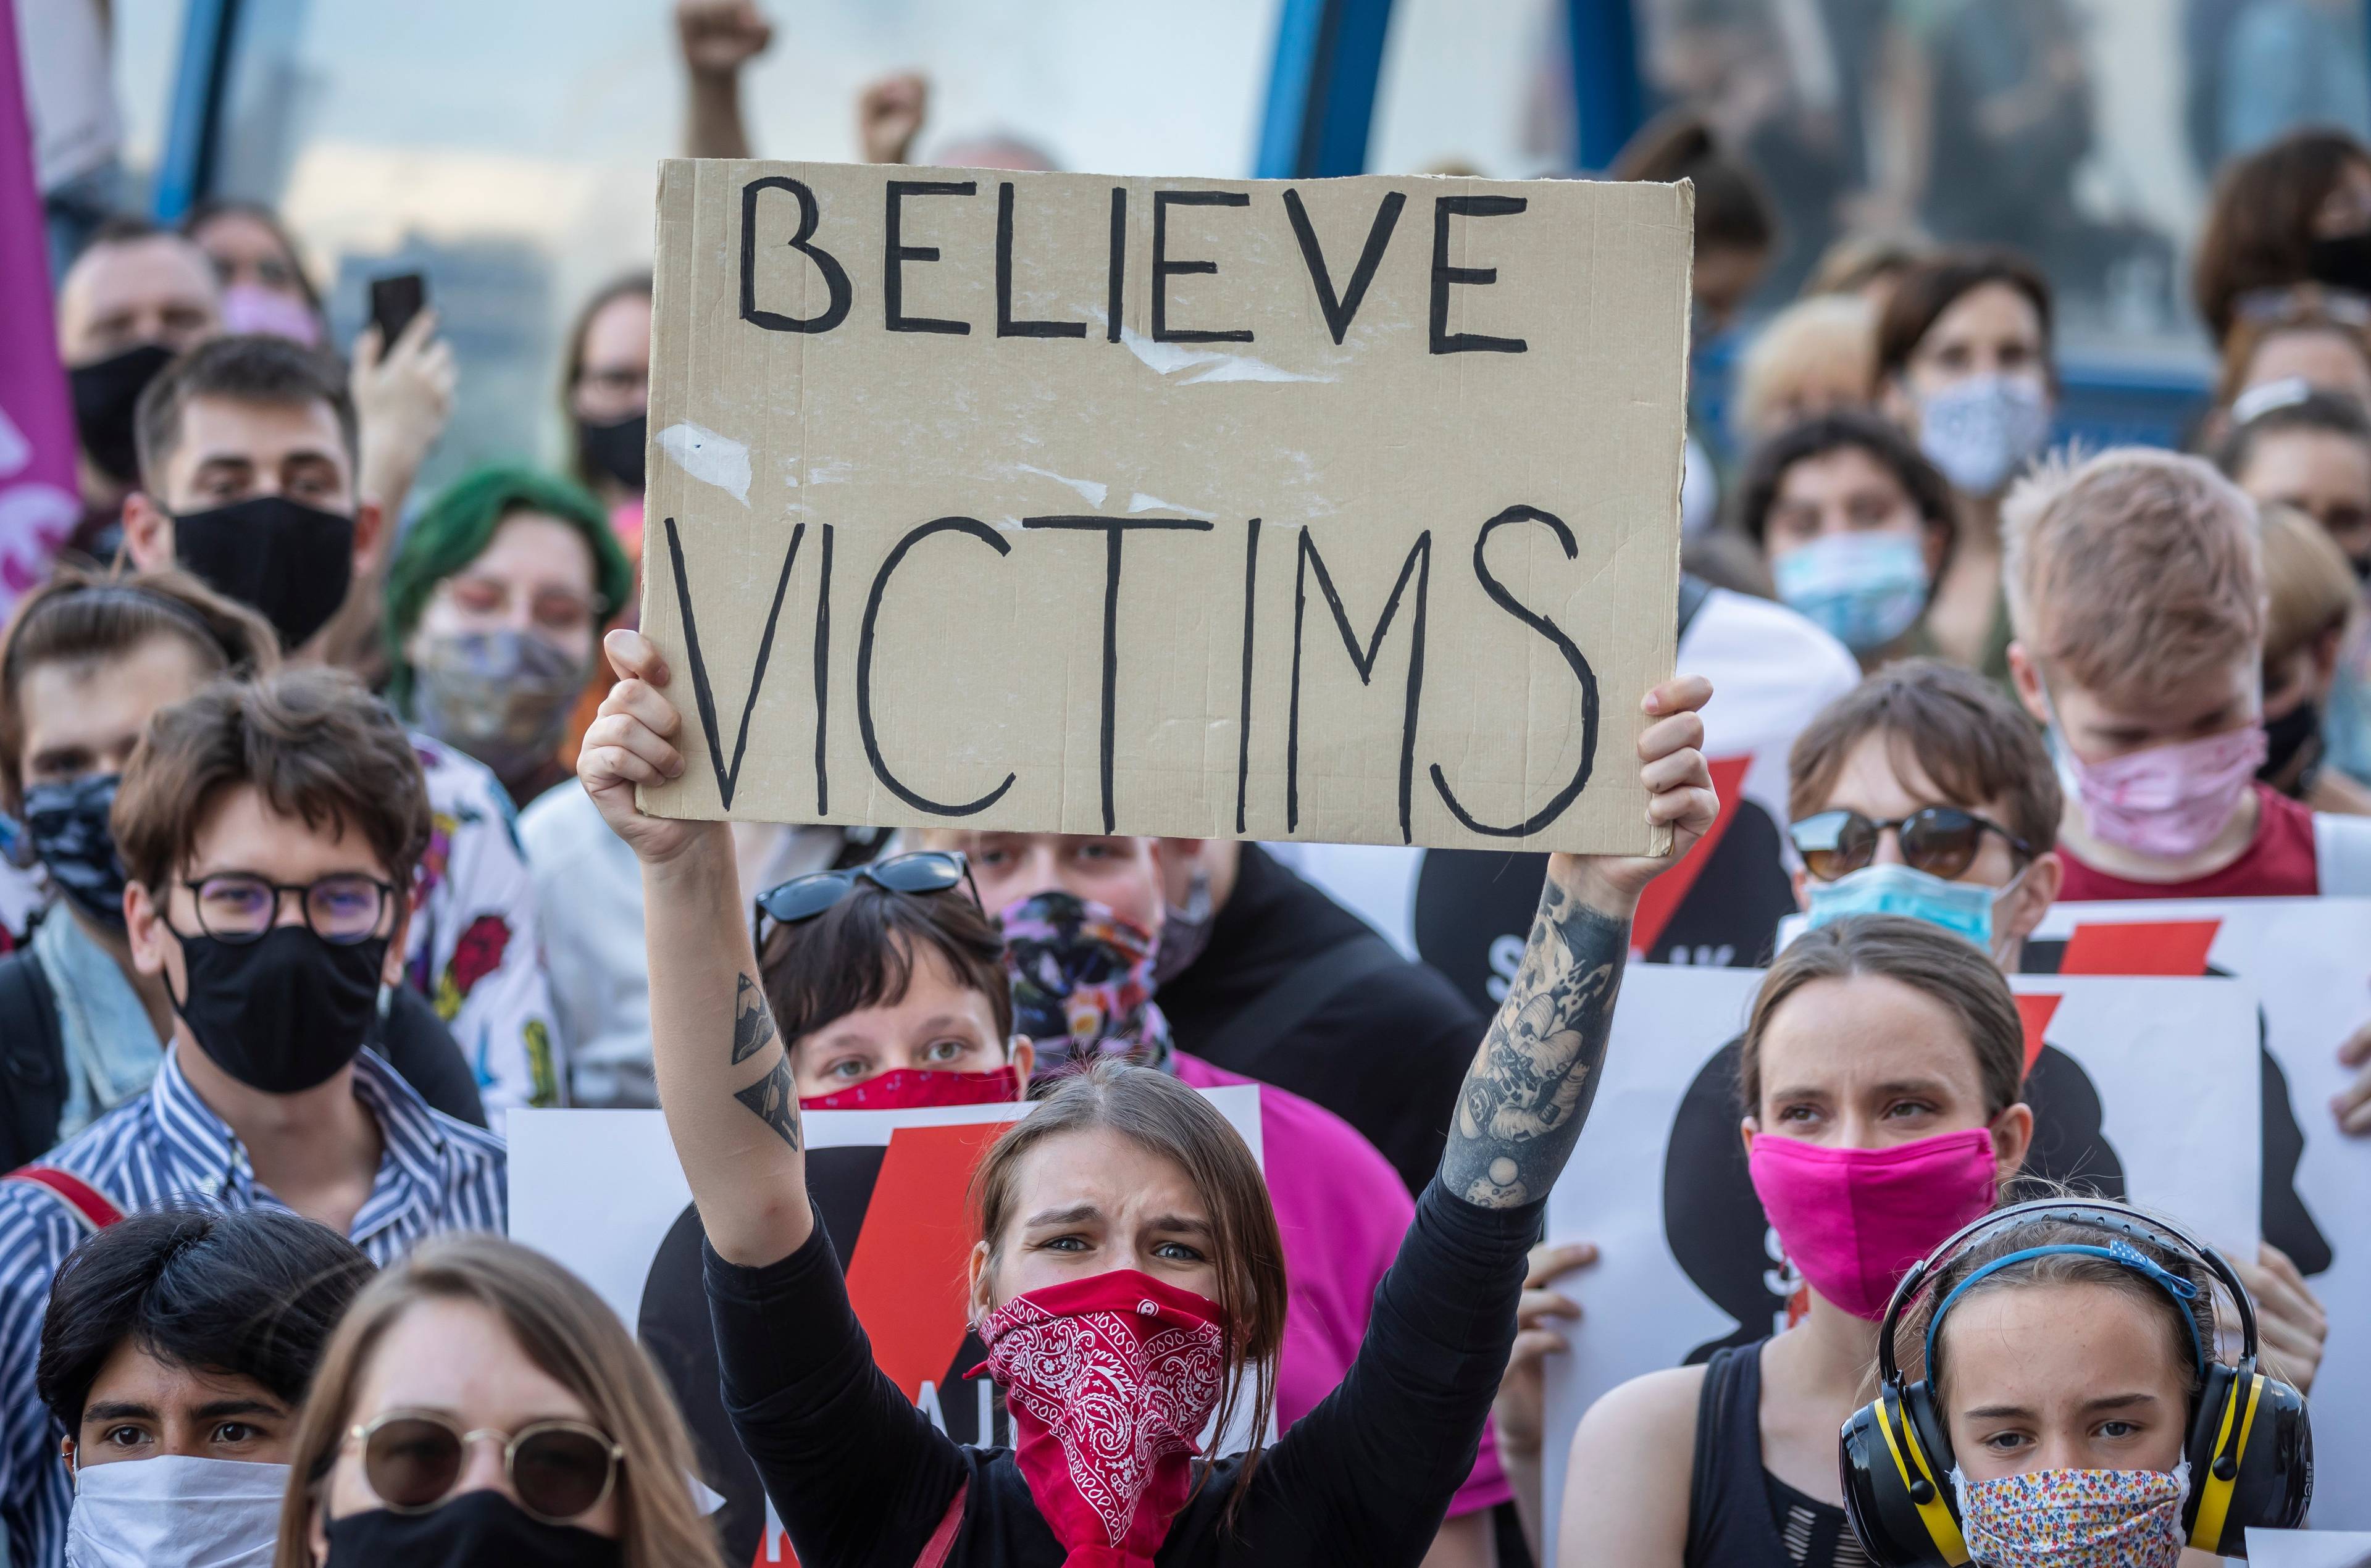 kobieta z czerwoną chustą na twarzy trzyma transparent z napisem na tekturze "Believe victims"